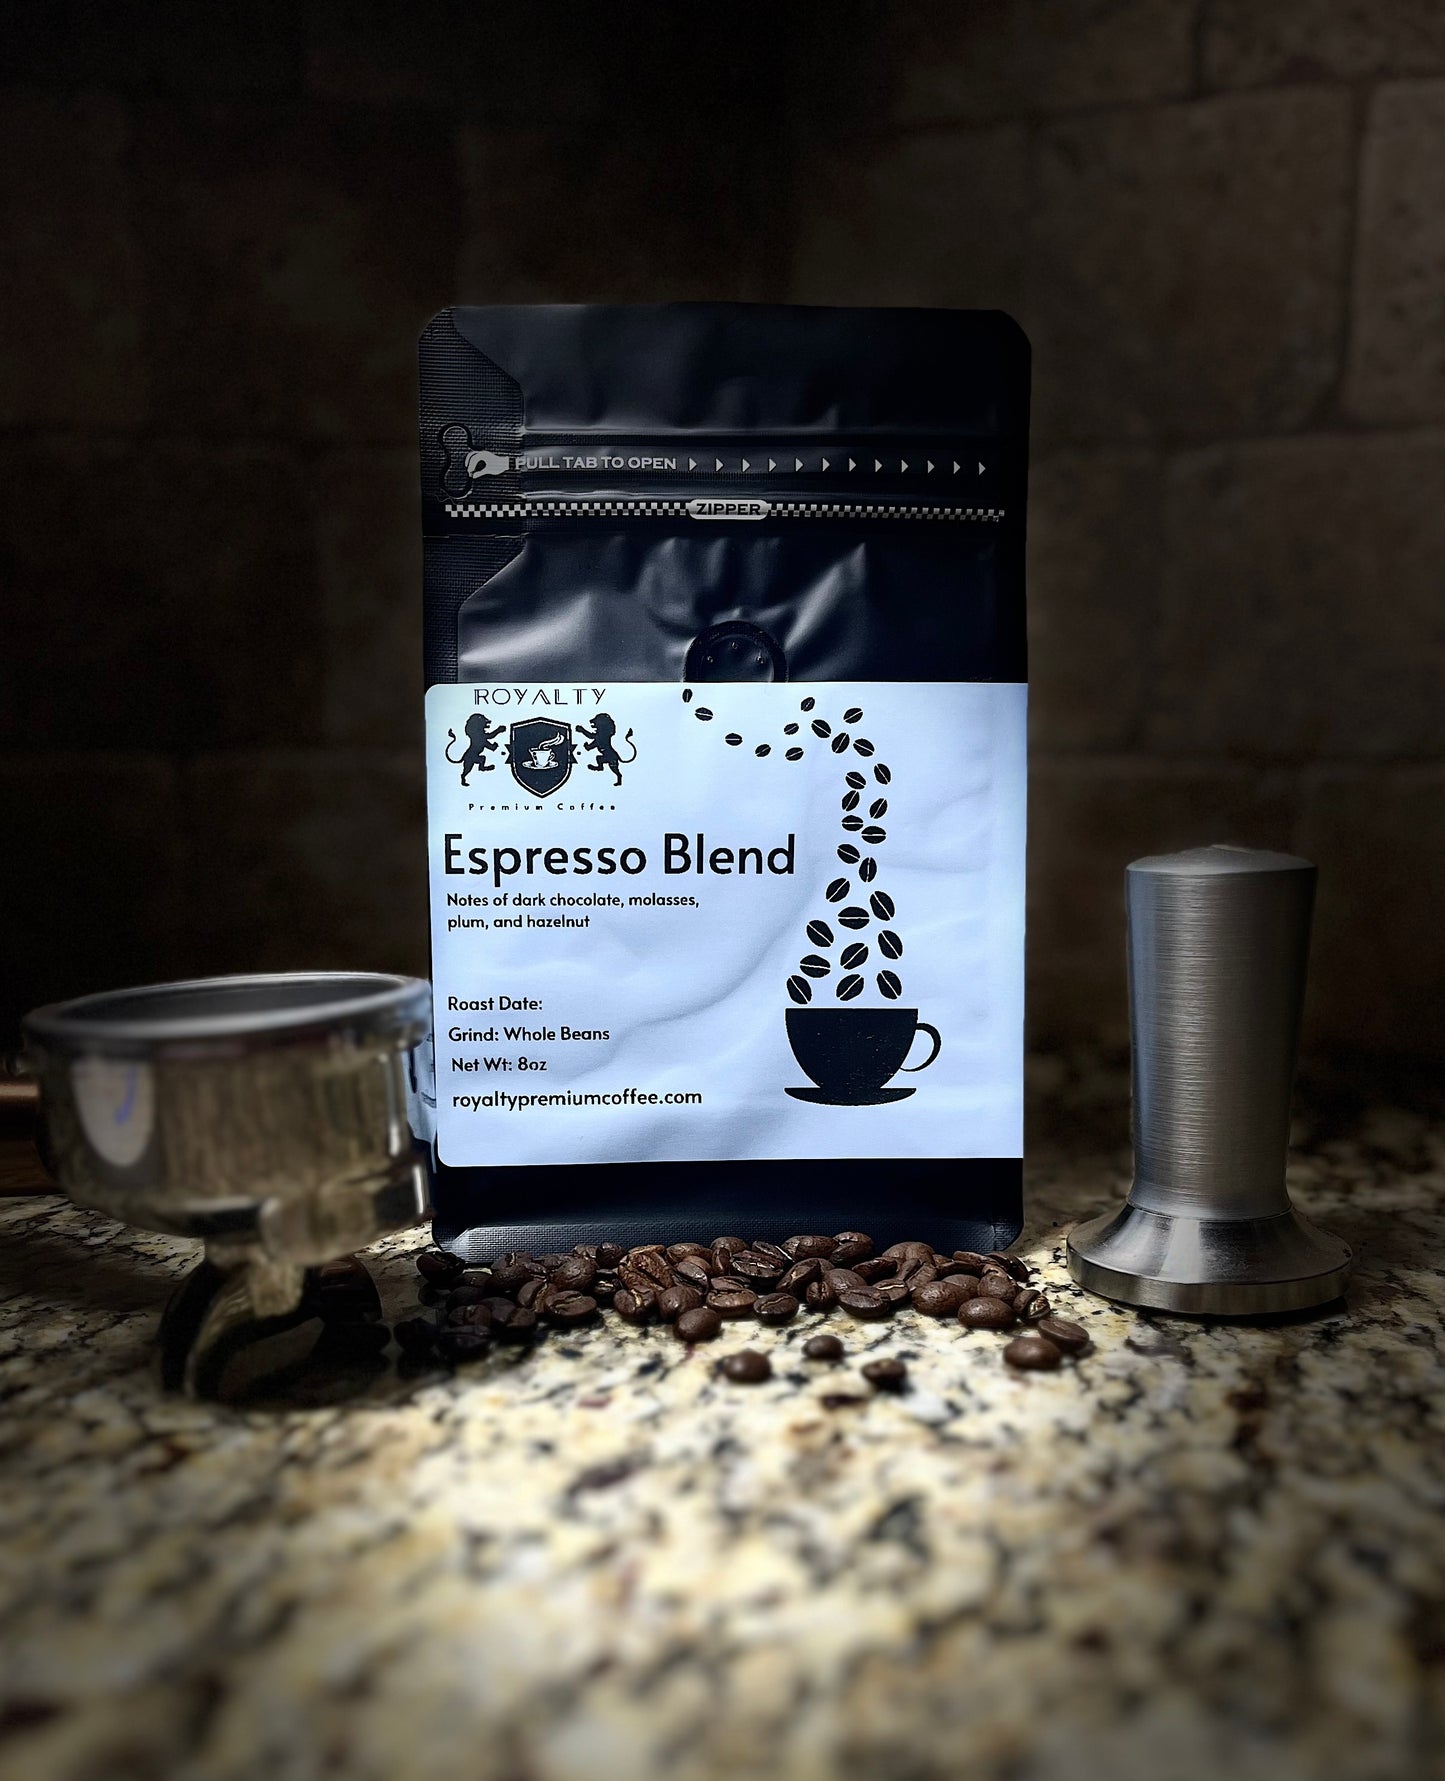 Espresso coffee